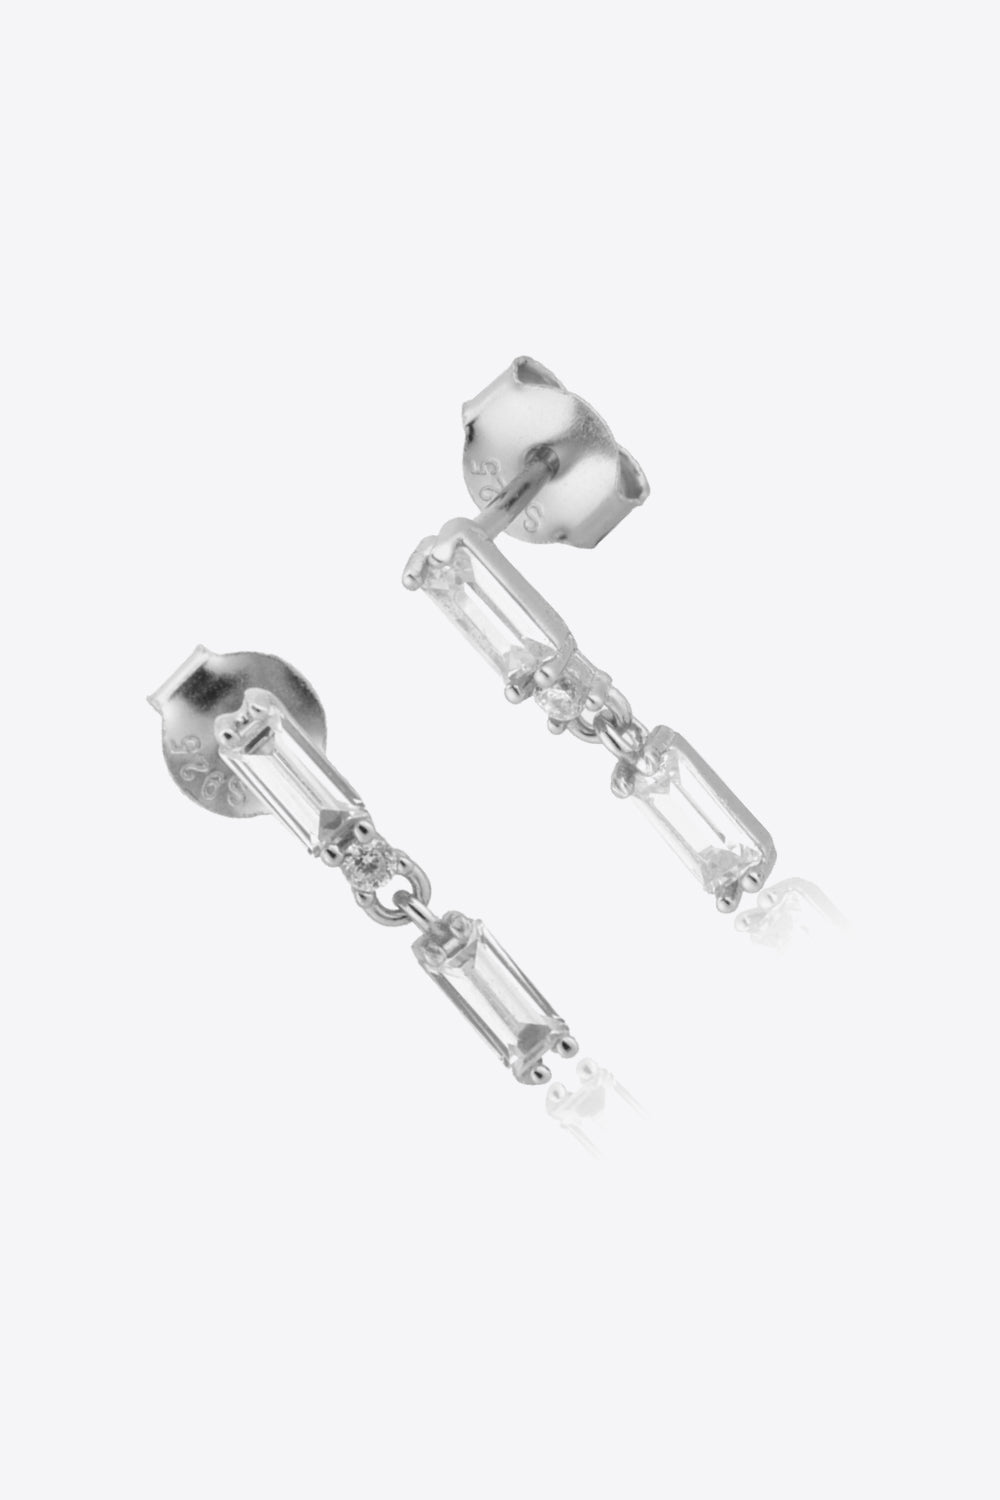 Zircon 925 Sterling Silver Drop Earrings - Earrings - FITGGINS